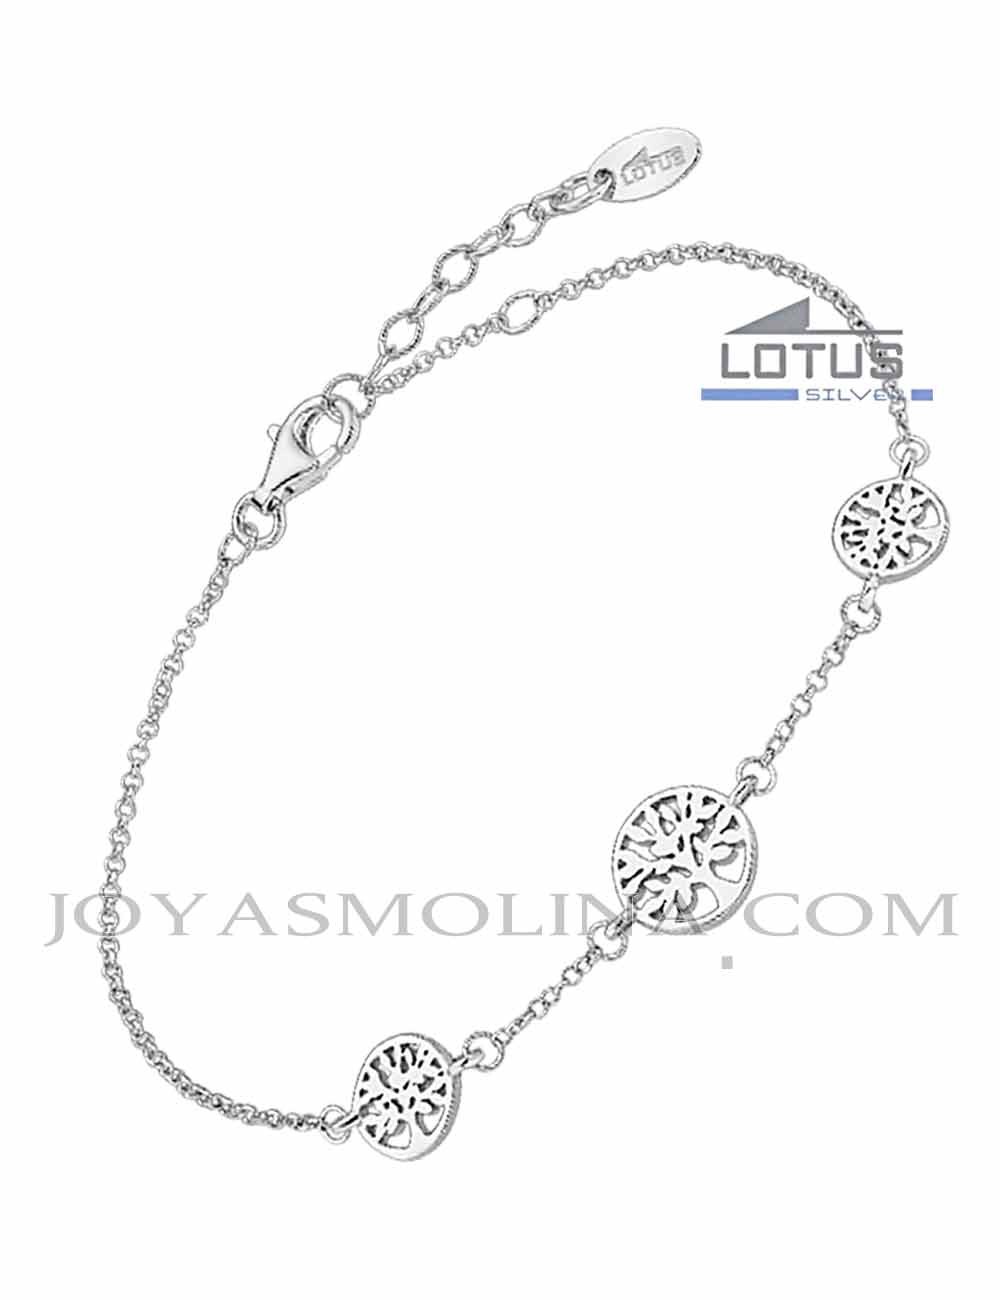 Lotus Silver Pulsera Plata Árbol de la Vida 